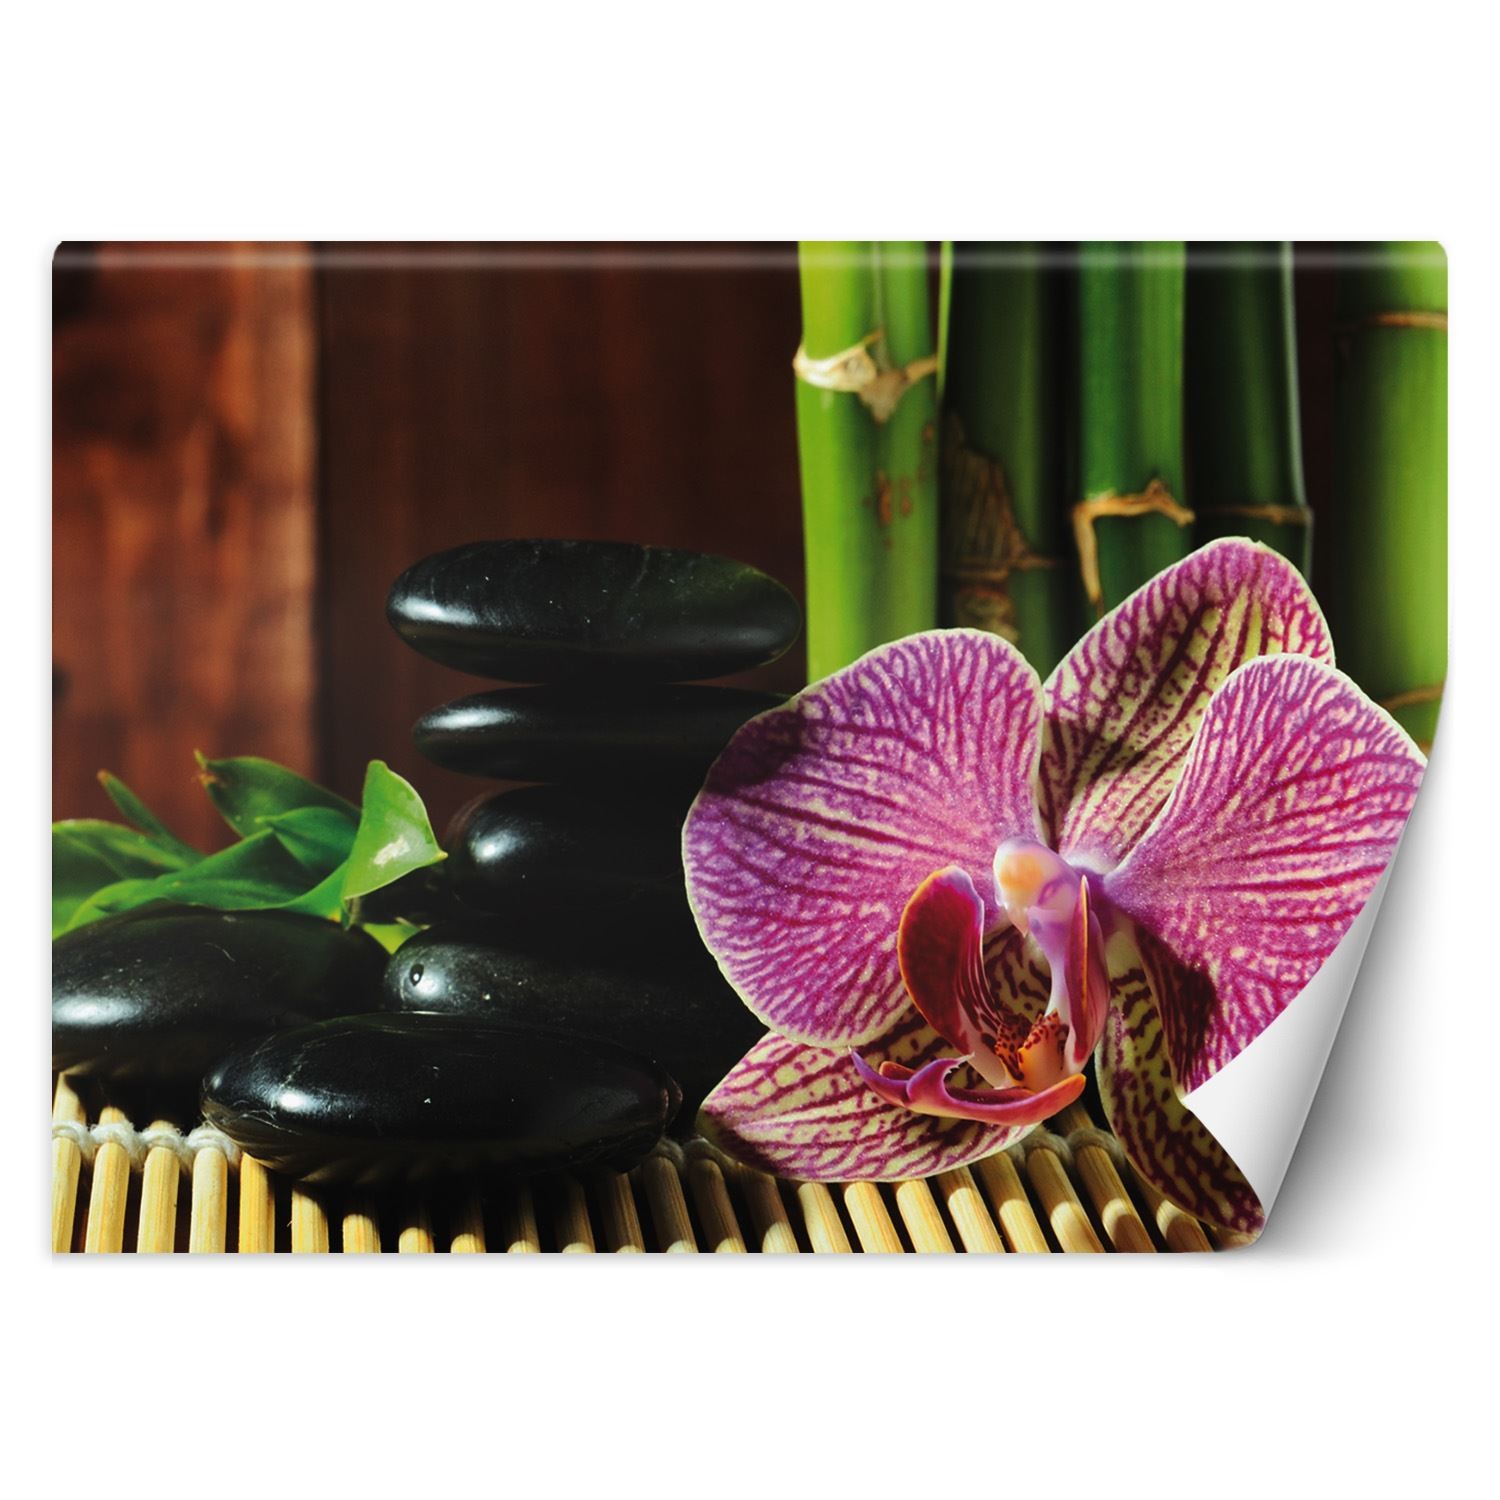 Trend24 – Behang – Orchid – Vliesbehang – Fotobehang – Behang Woonkamer – 450×315 cm – Incl. behanglijm